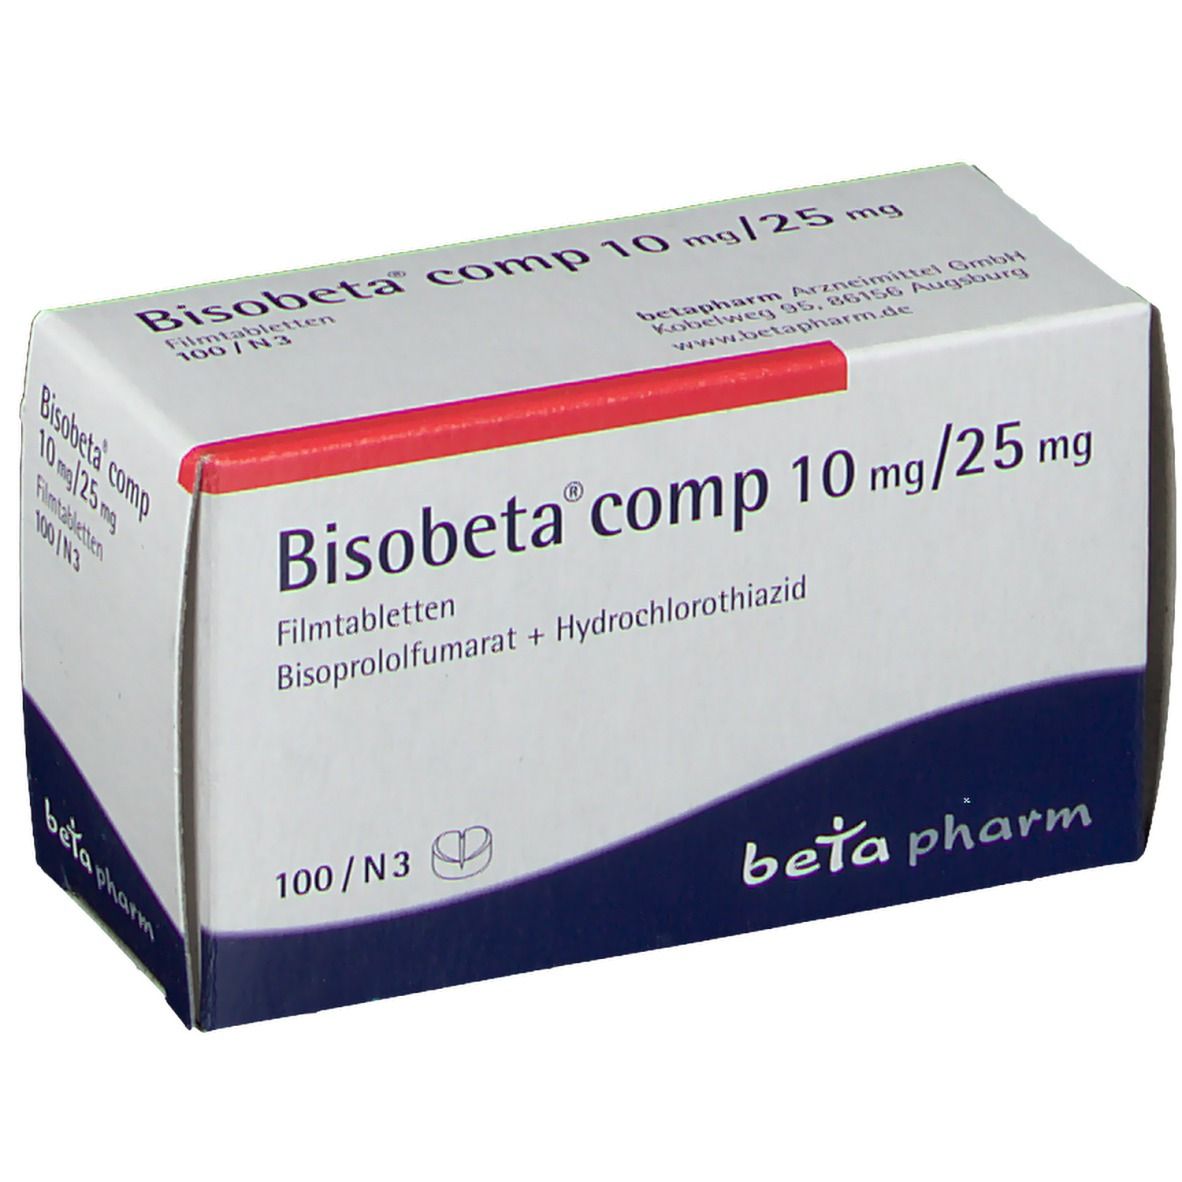 Bisobeta® comp 10 mg/25 mg